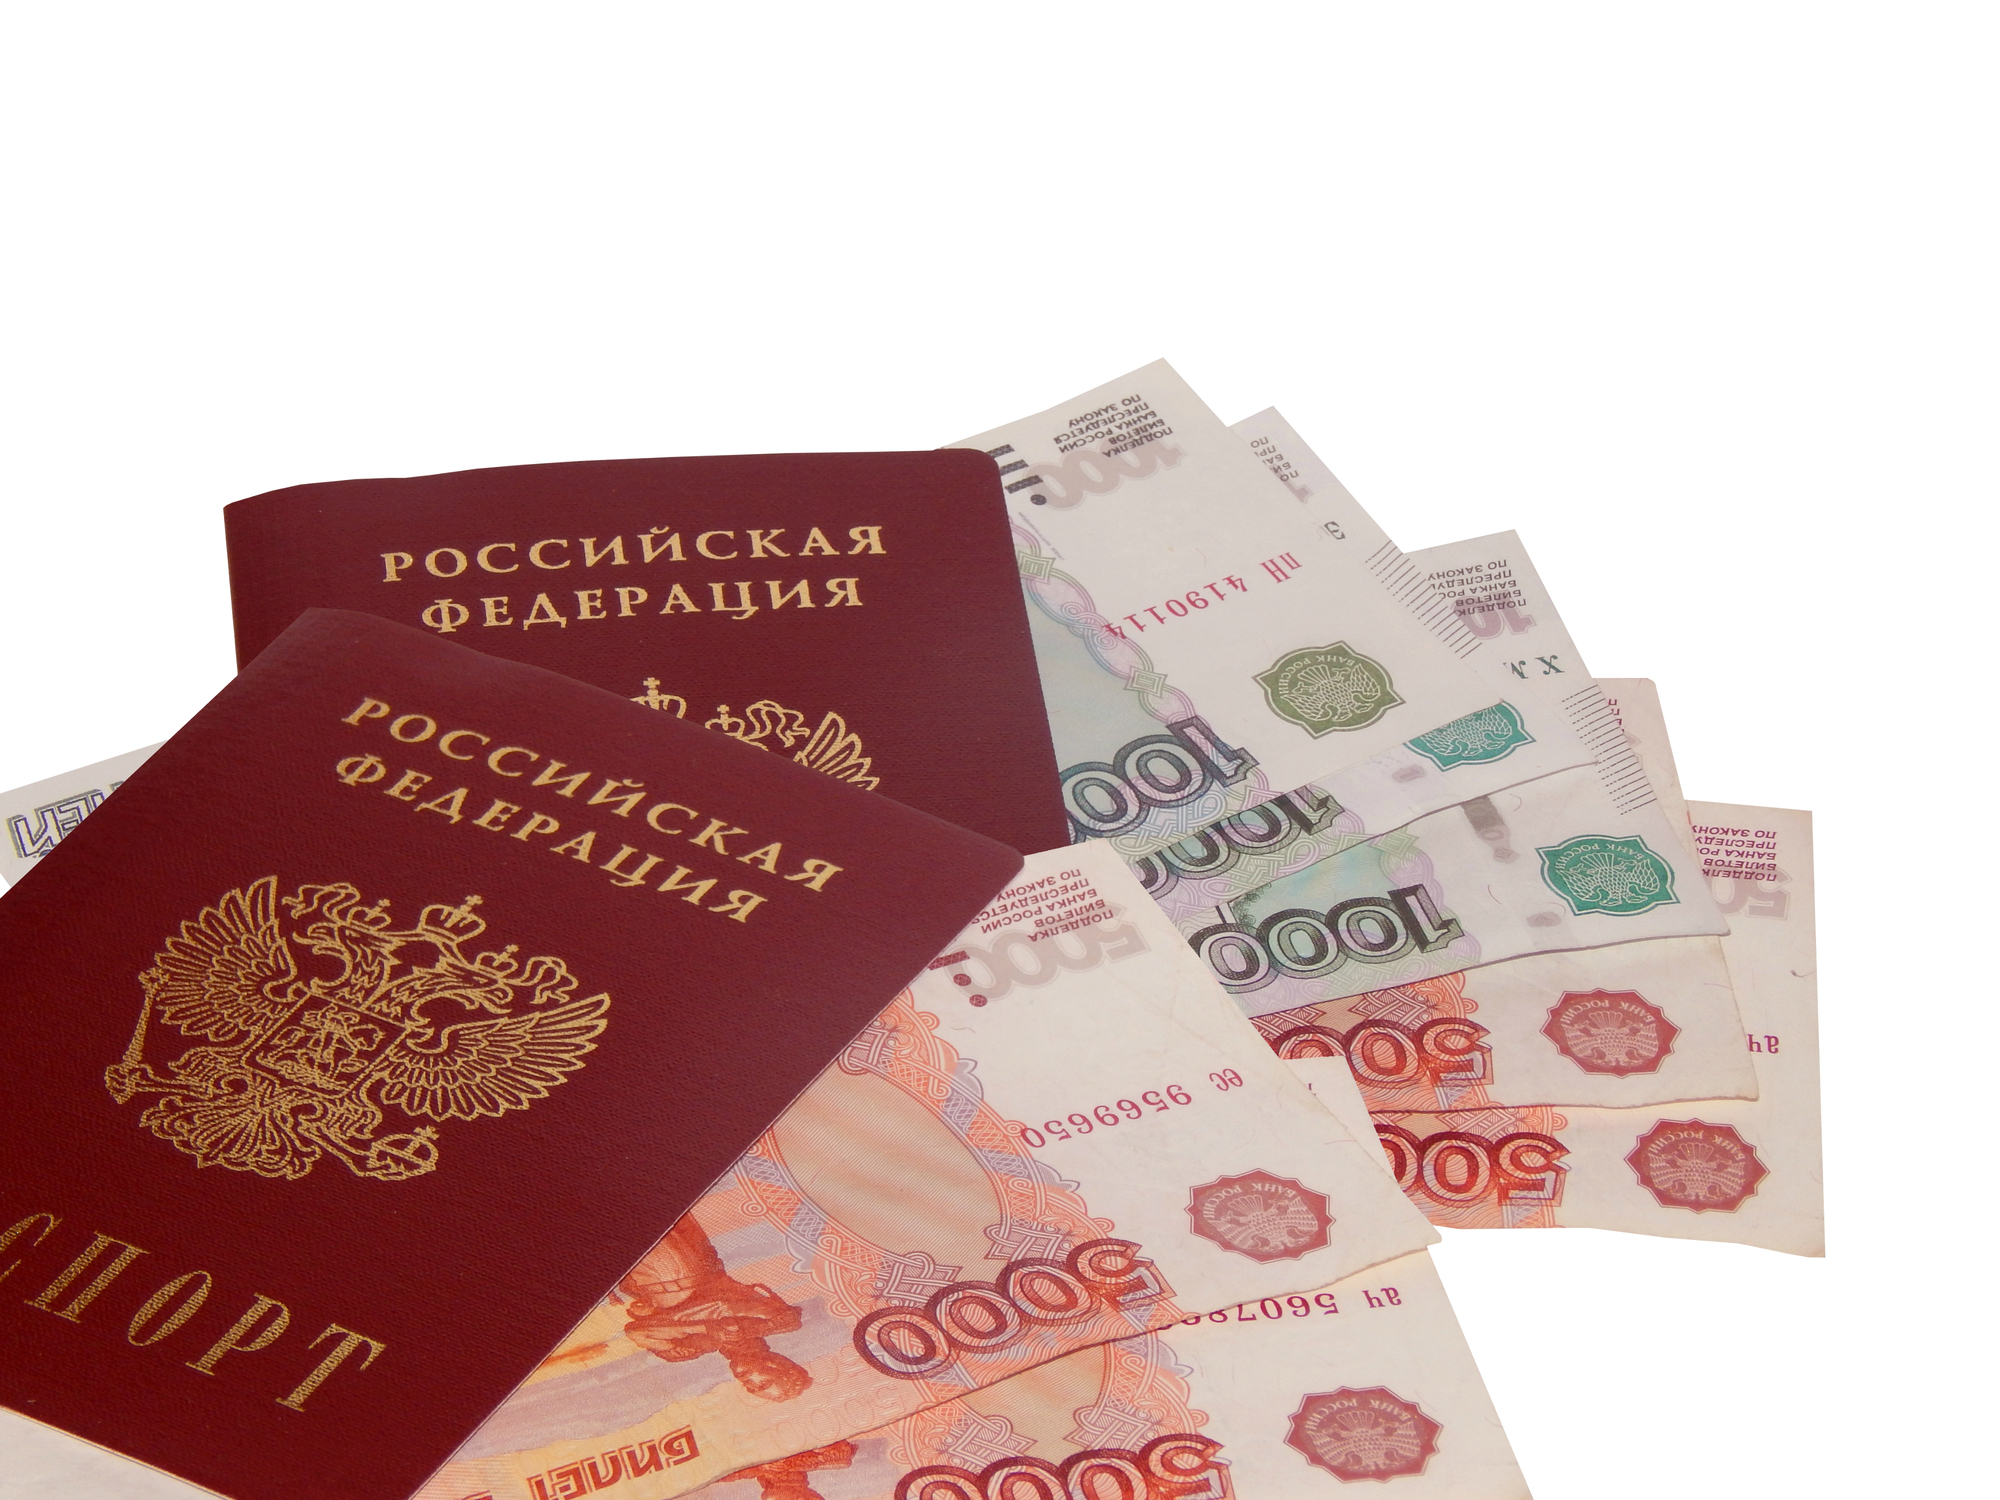 Займ по паспорту наличными в Ростове на Дону круглосуточно